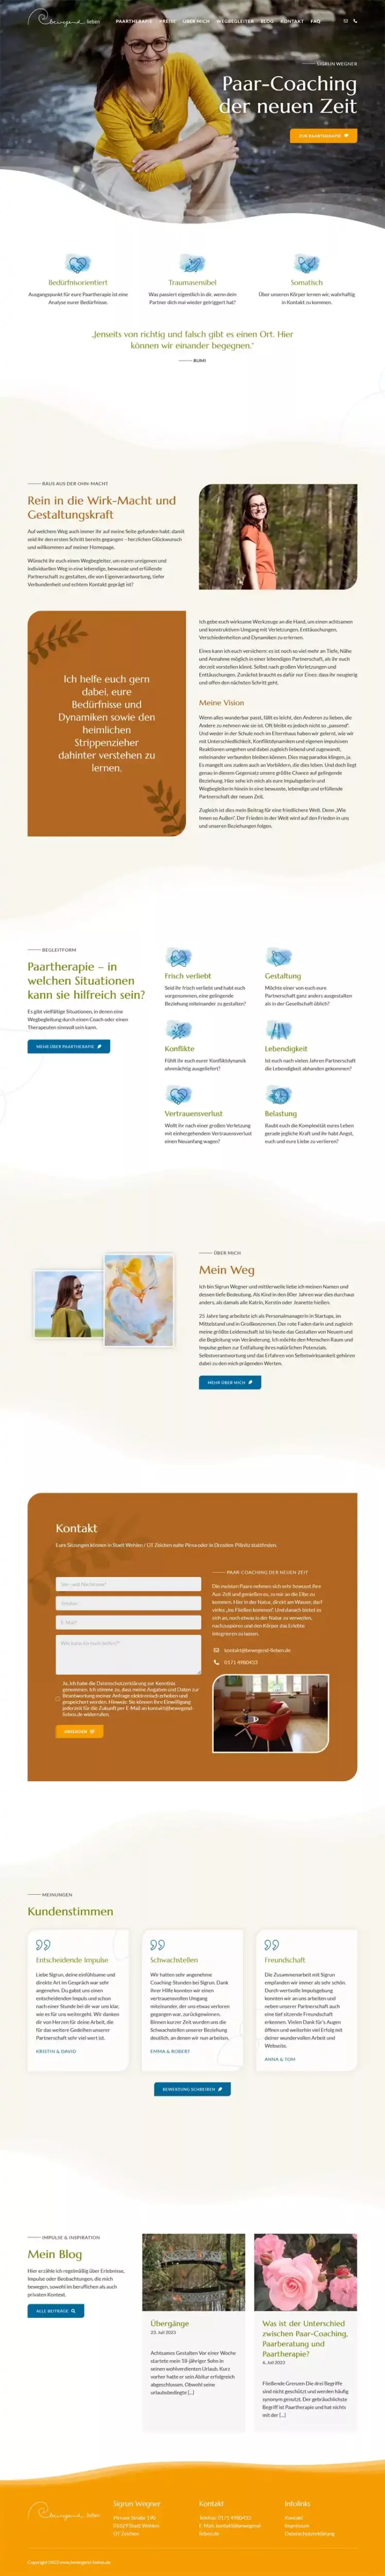 Bewegend lieben - Paartherapie mit Sigrun Wegner - Screenshot Fullsize Startseite